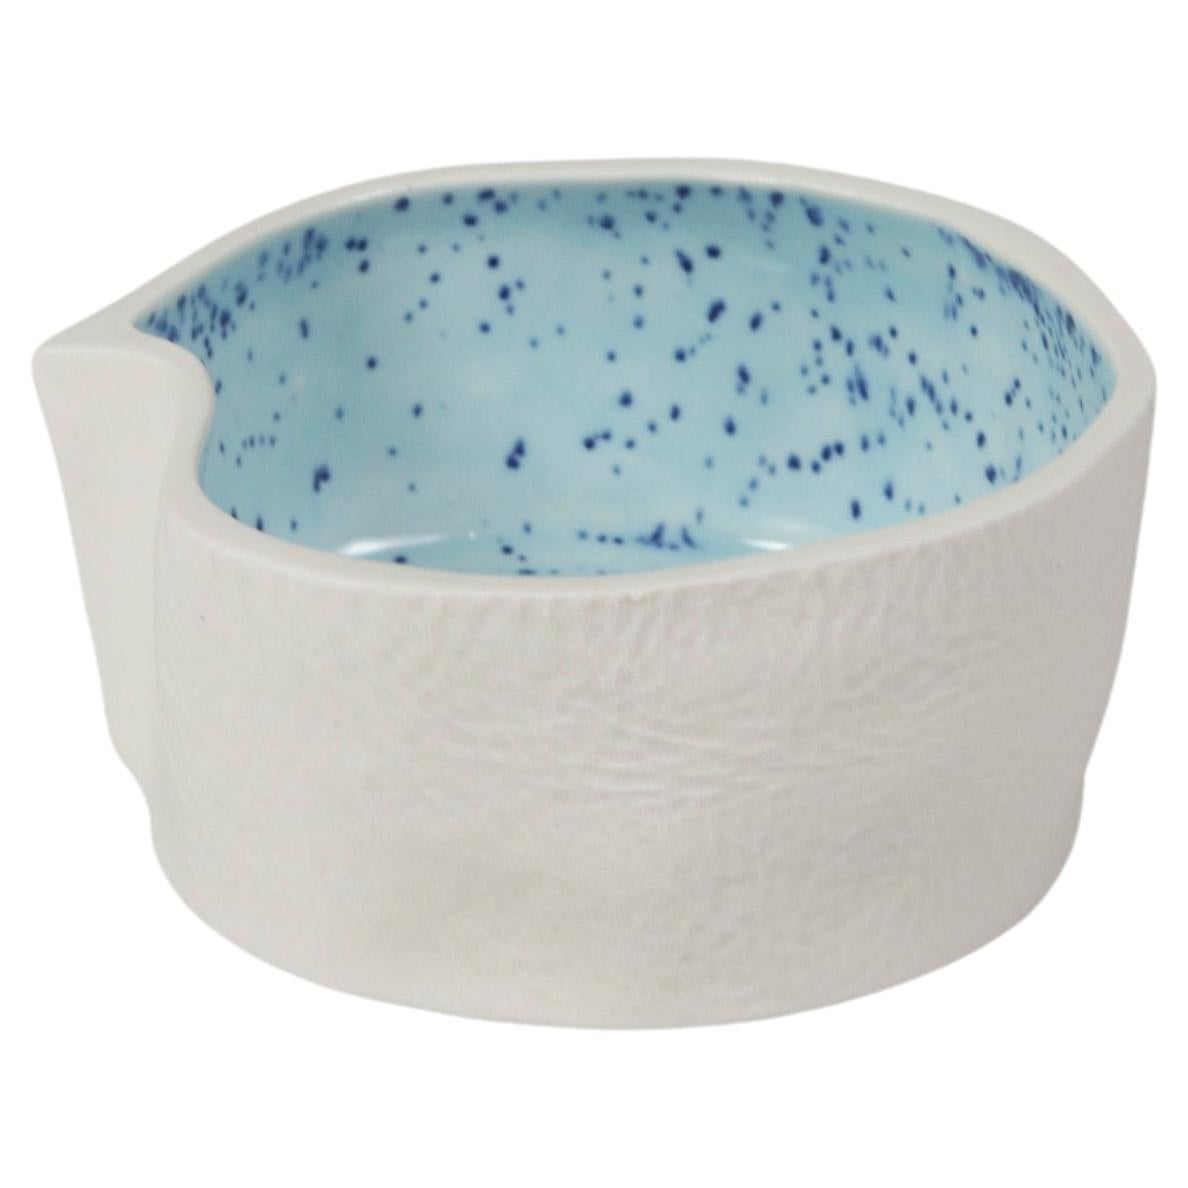 Petit plat Kawa en céramique blanc et bleu clair, bol attrape-tout en porcelaine texturé